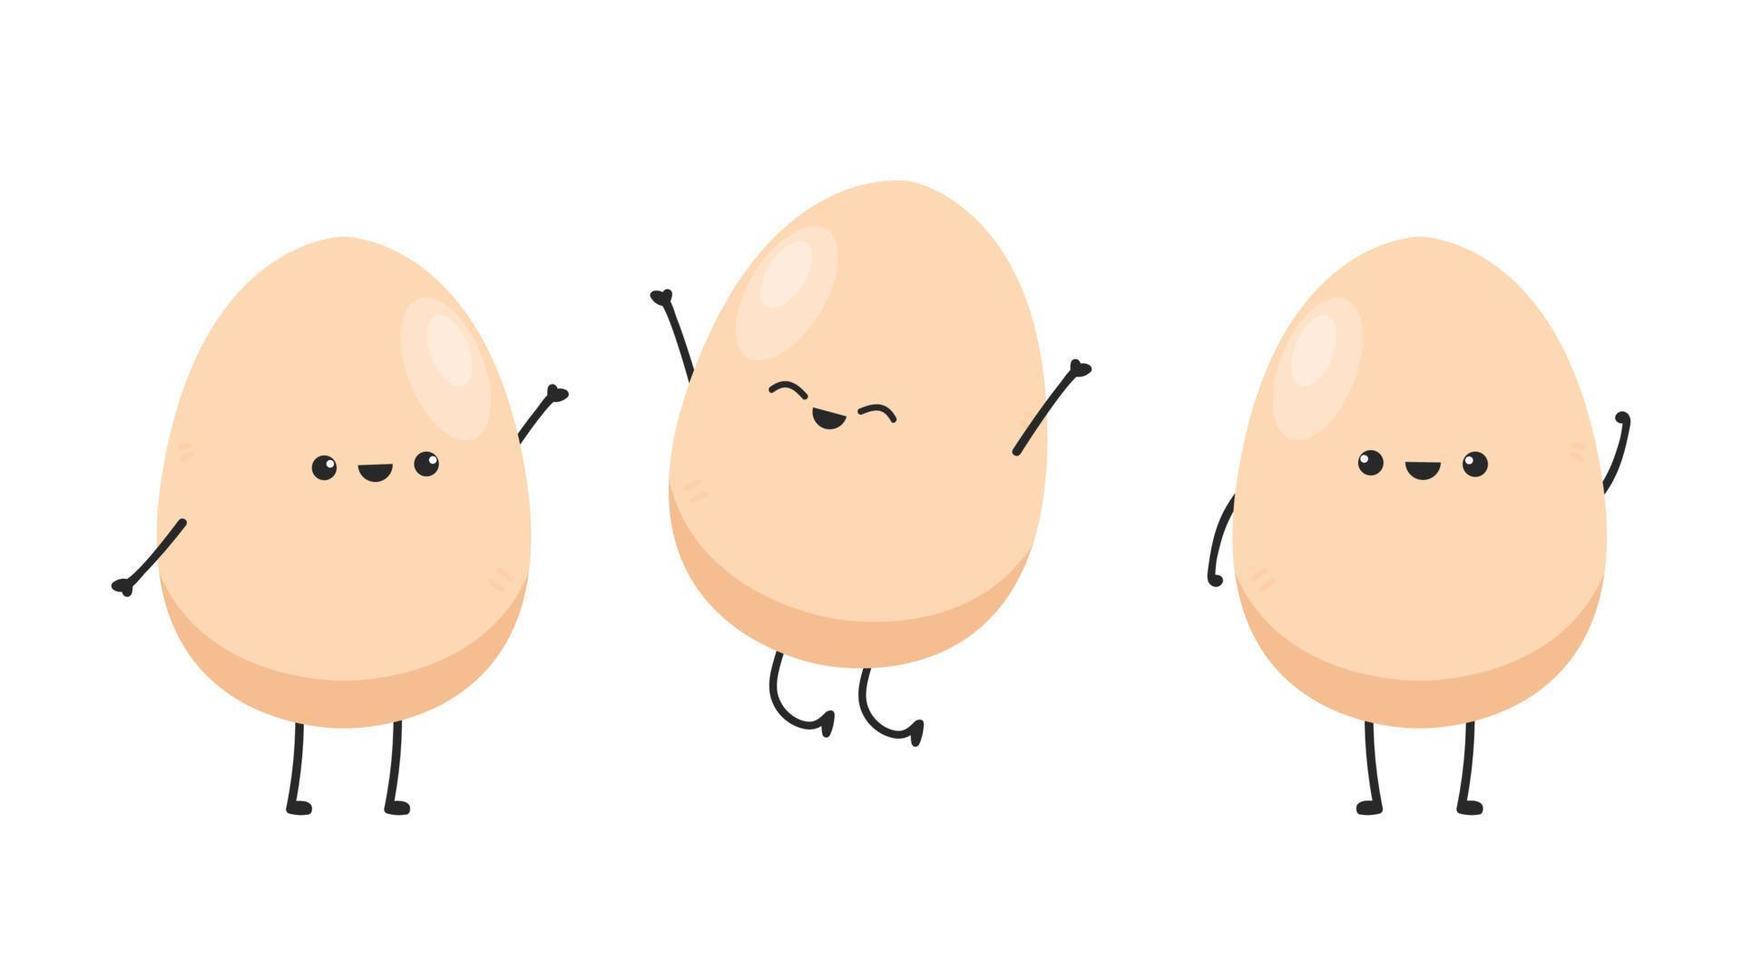 Egg character design. egg vector on white background.